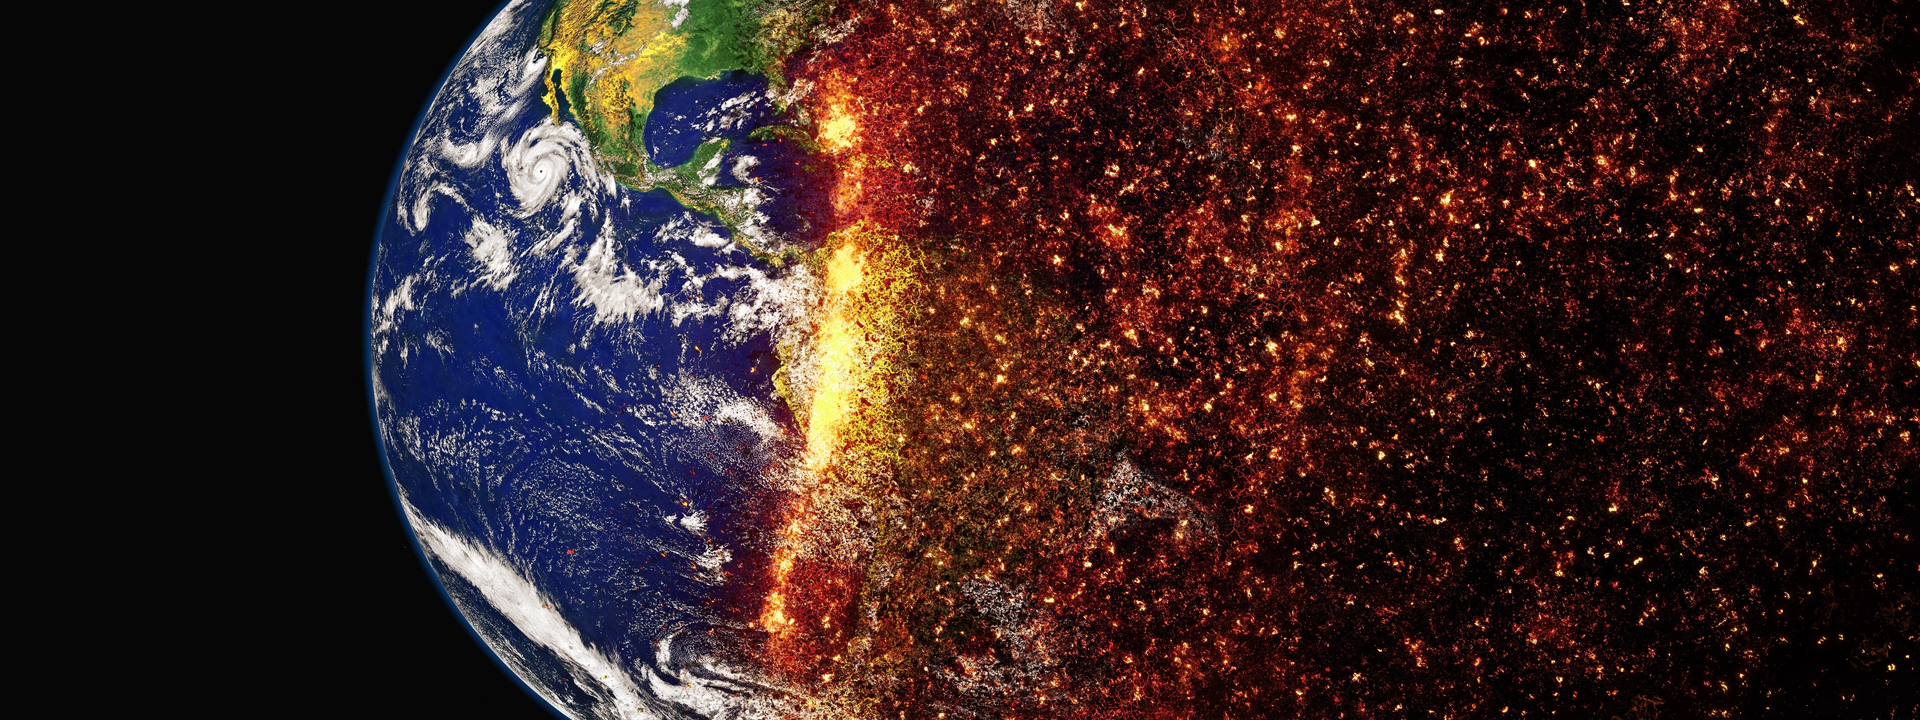 Emergencia climática: no basta con la concienciación, es la hora de la acción